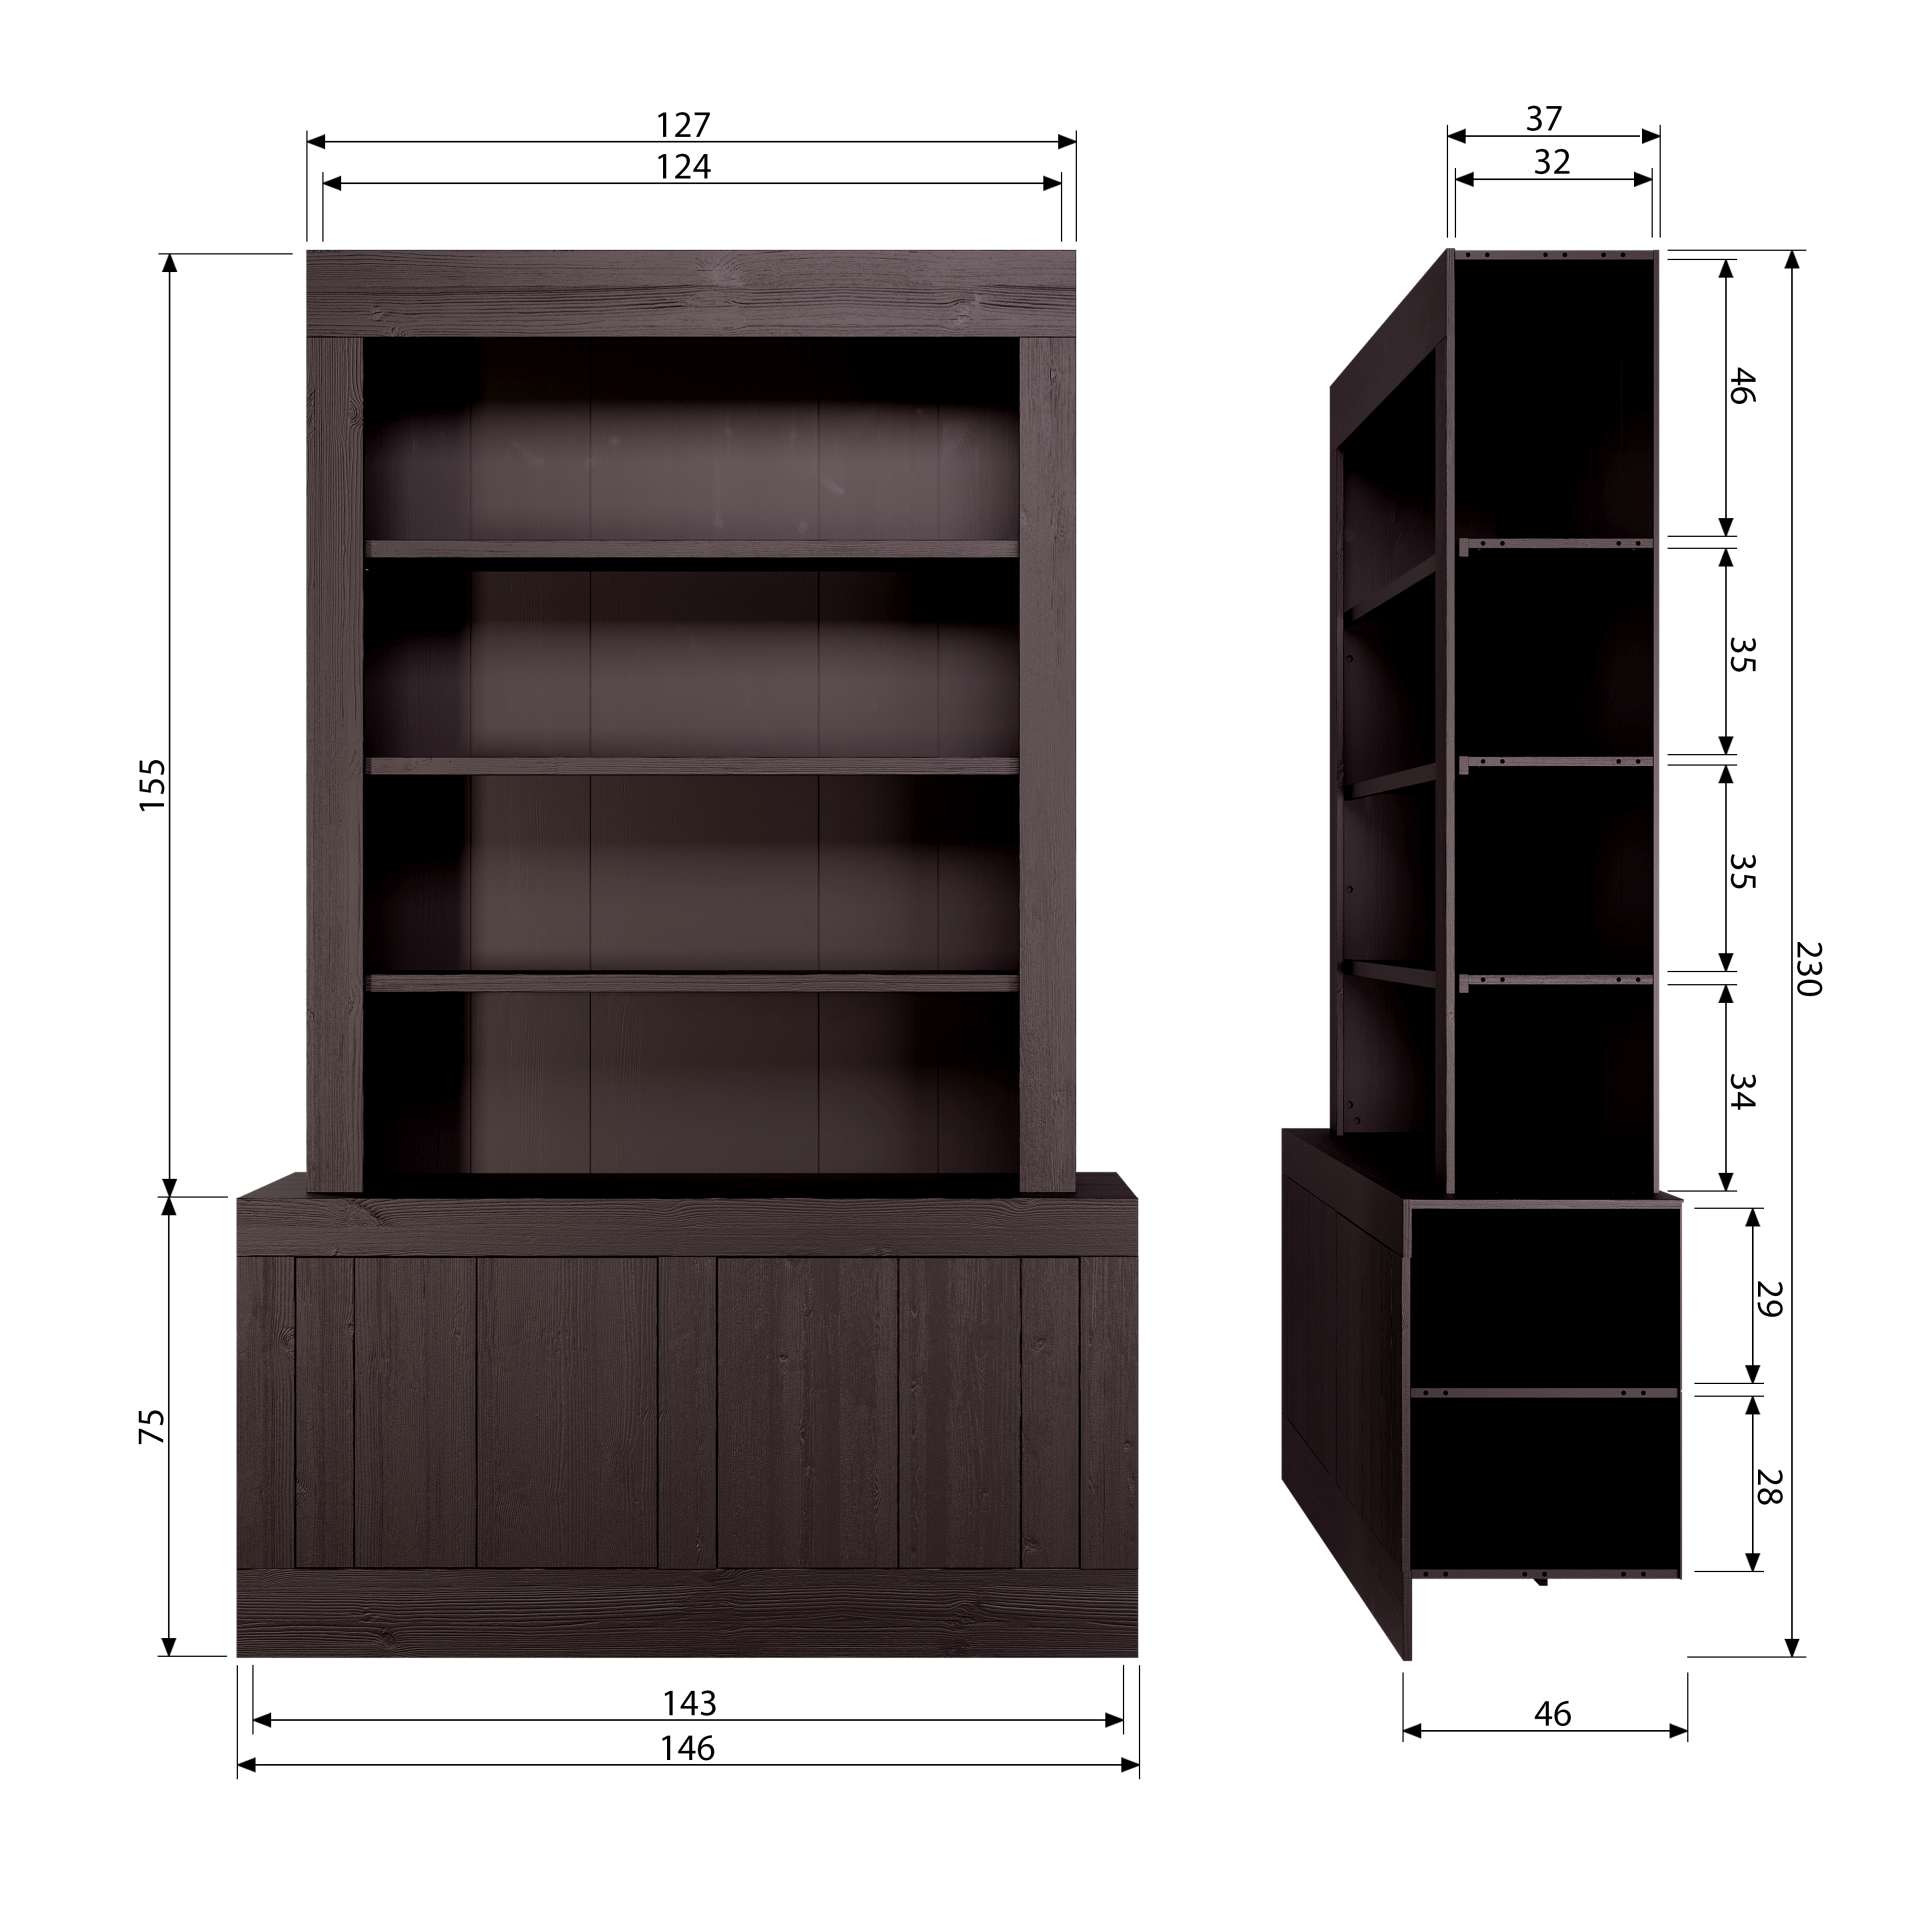 Der Buffetschrank Yumi überzeugt mit seinem modernem Design. Gefertigt wurde er aus Kiefernholz, welches einen dunkelbraunen Farbton besitzt. Der Schrank verfügt über zwei Türen und drei offene Fächer. Die Breite beträgt 146 cm.